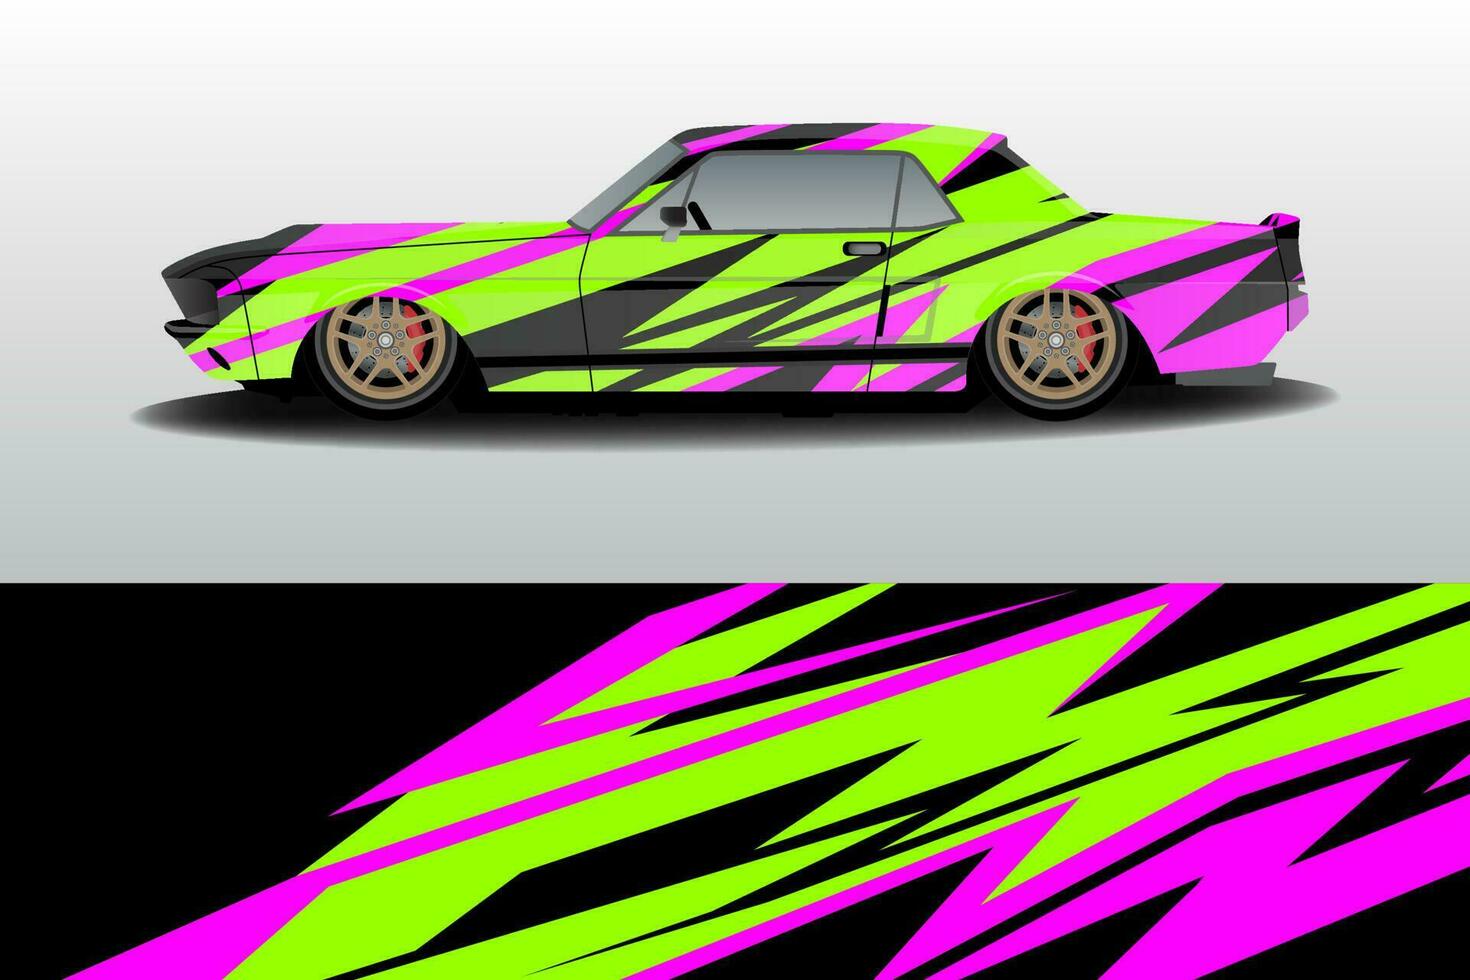 diseño de fondo de coche de carreras de rally vector